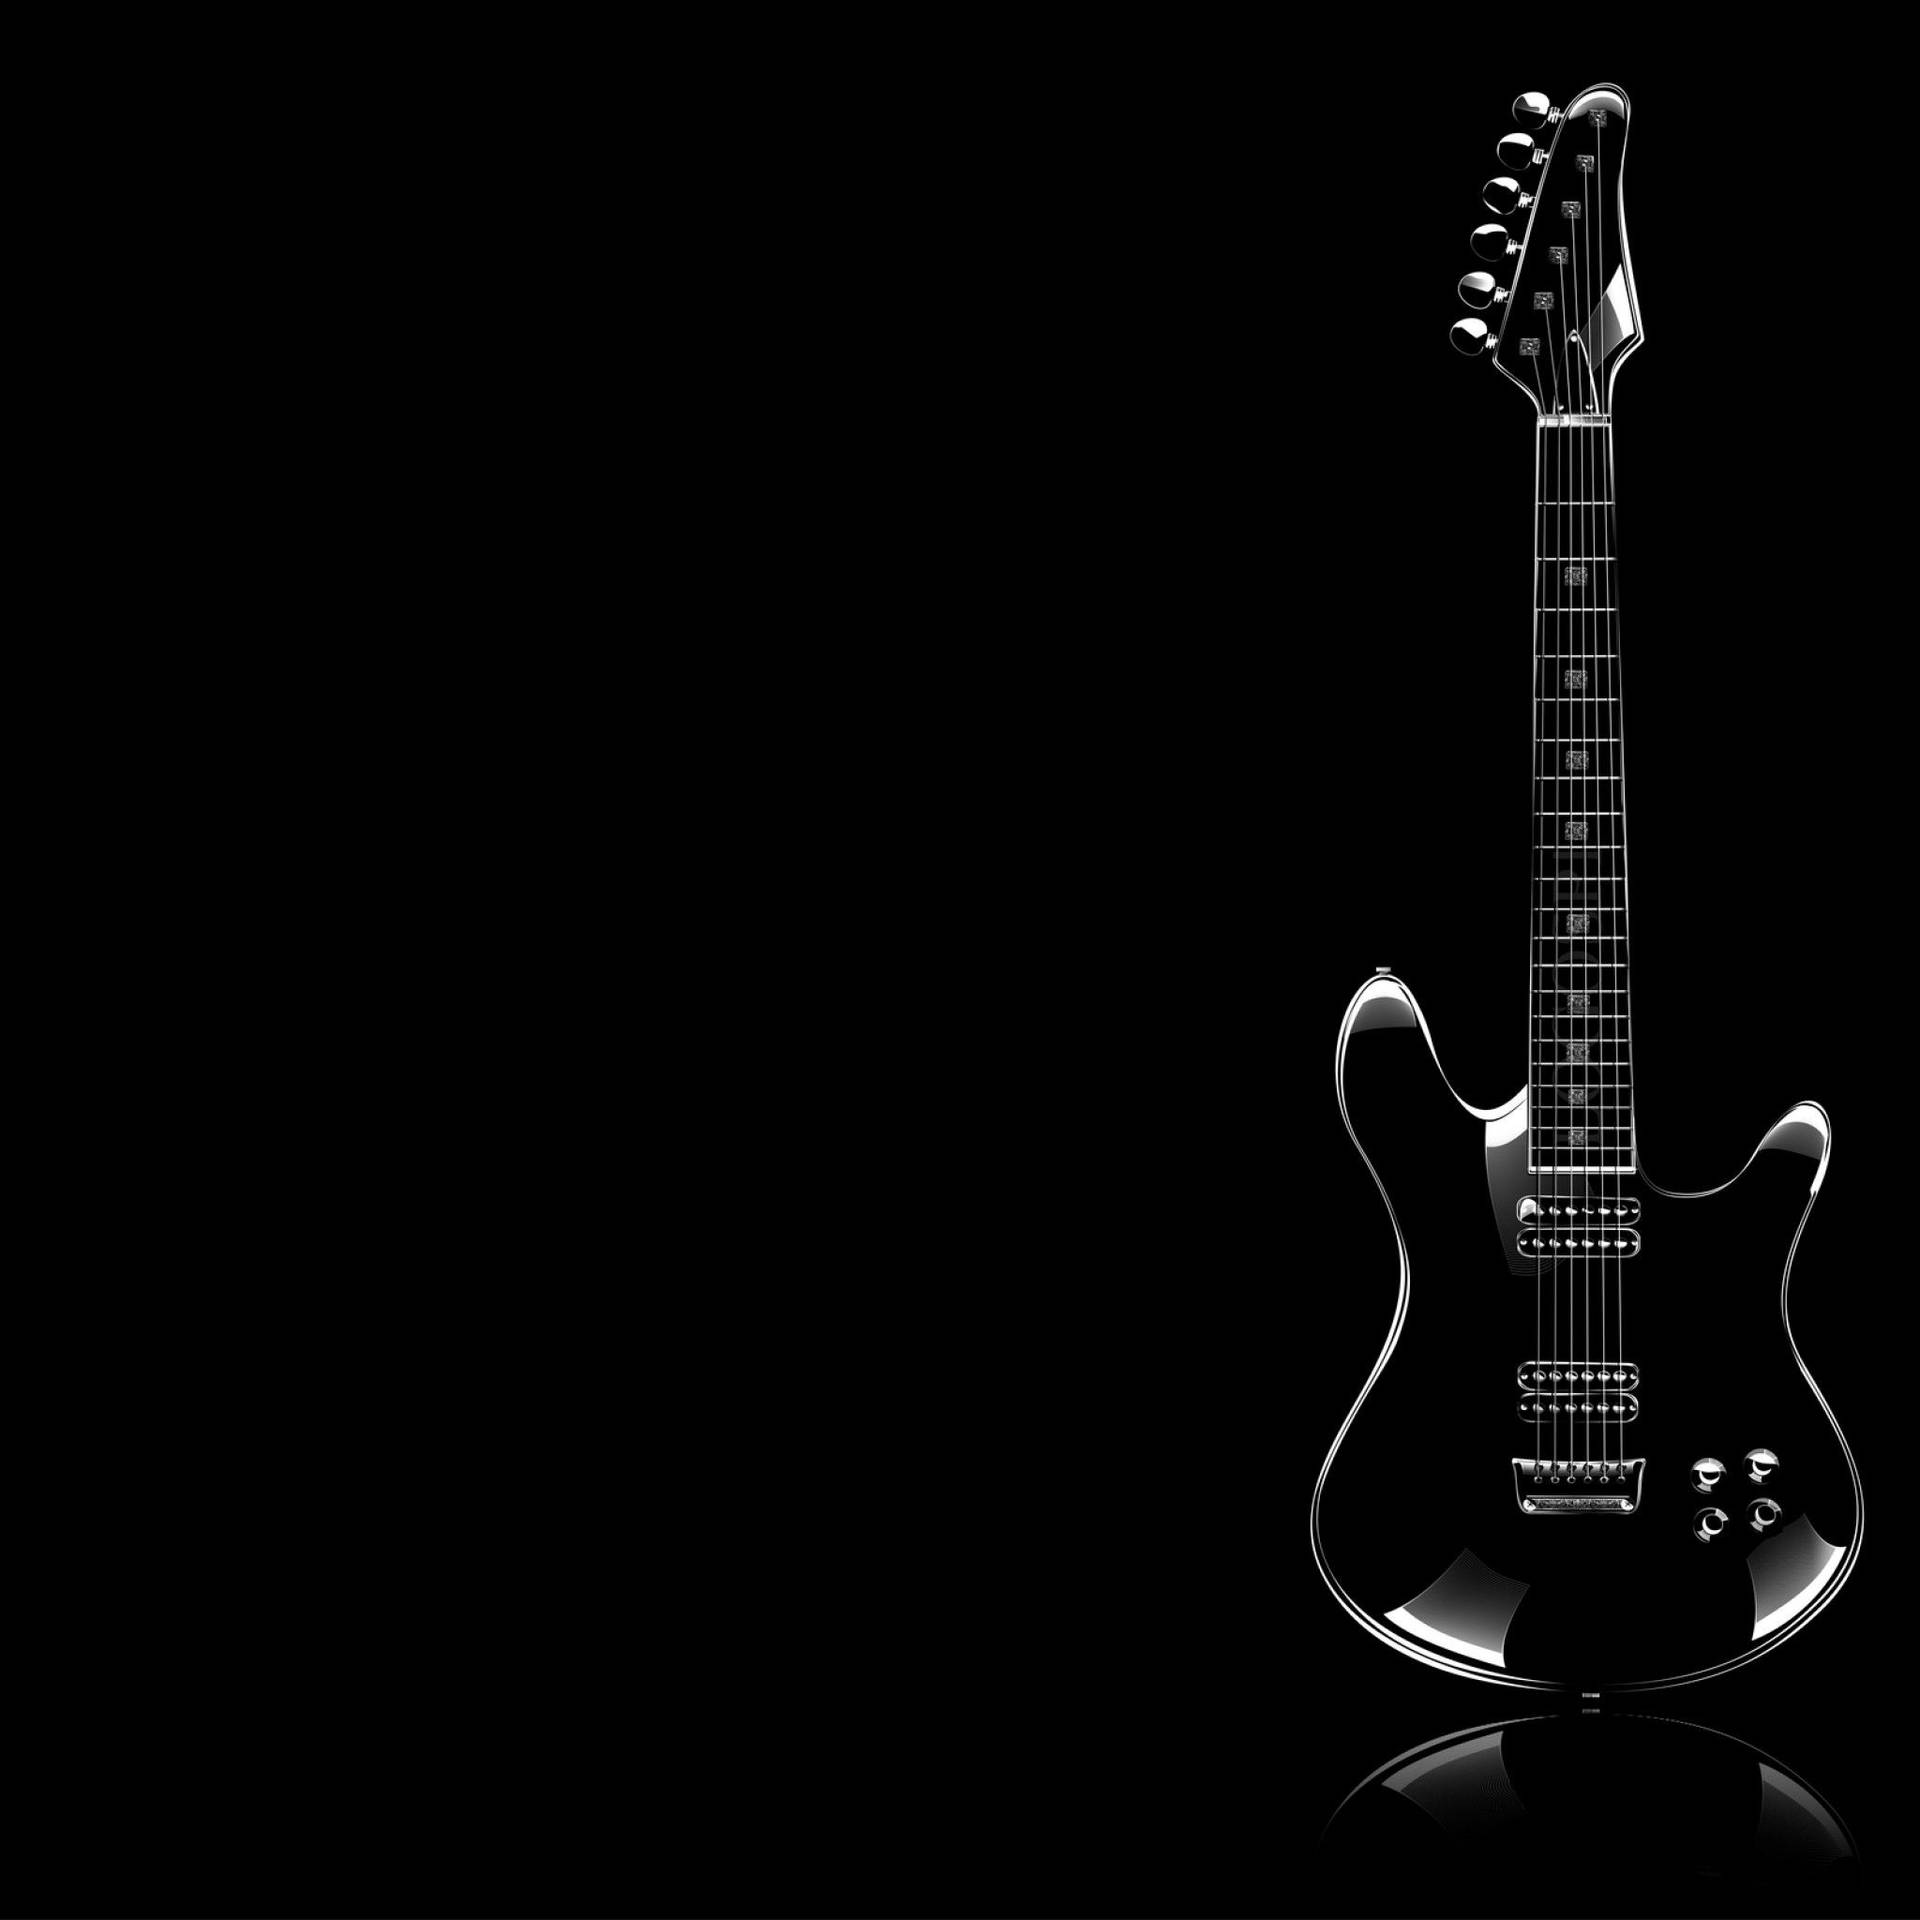 Black Sleek Guitar